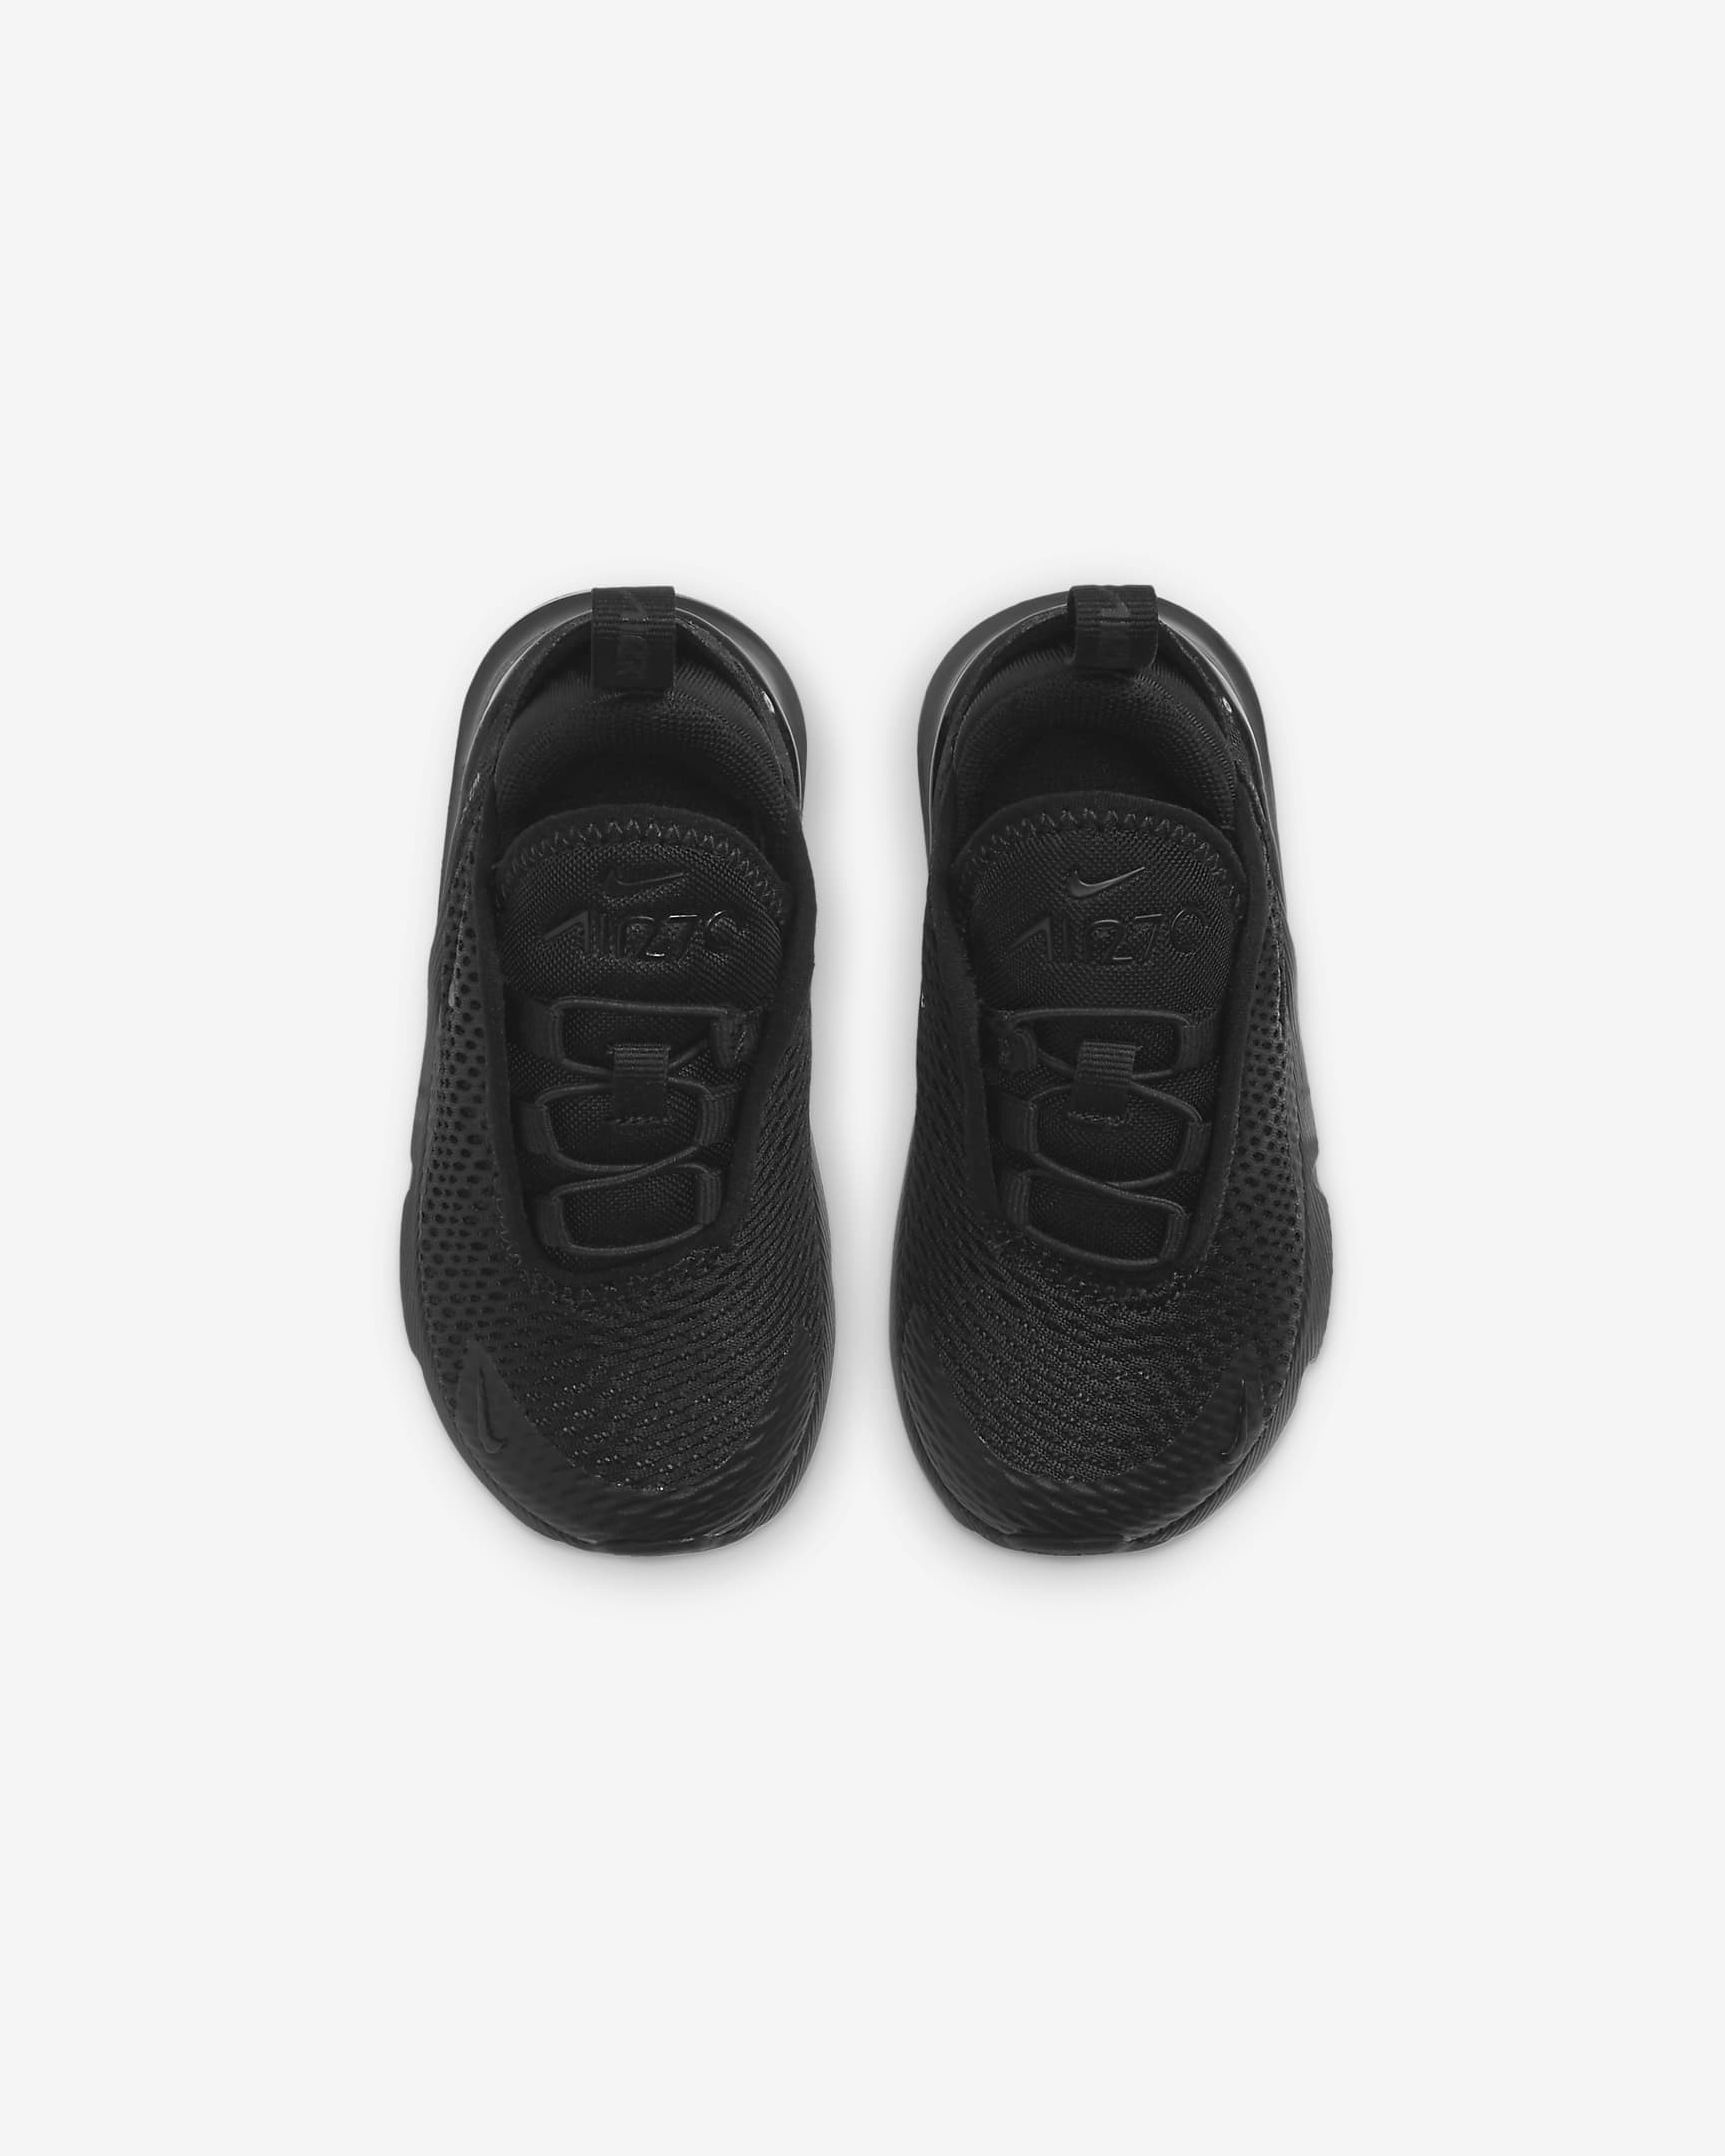 Nike Air Max 270 Baby/Toddler Shoe - Black/Black